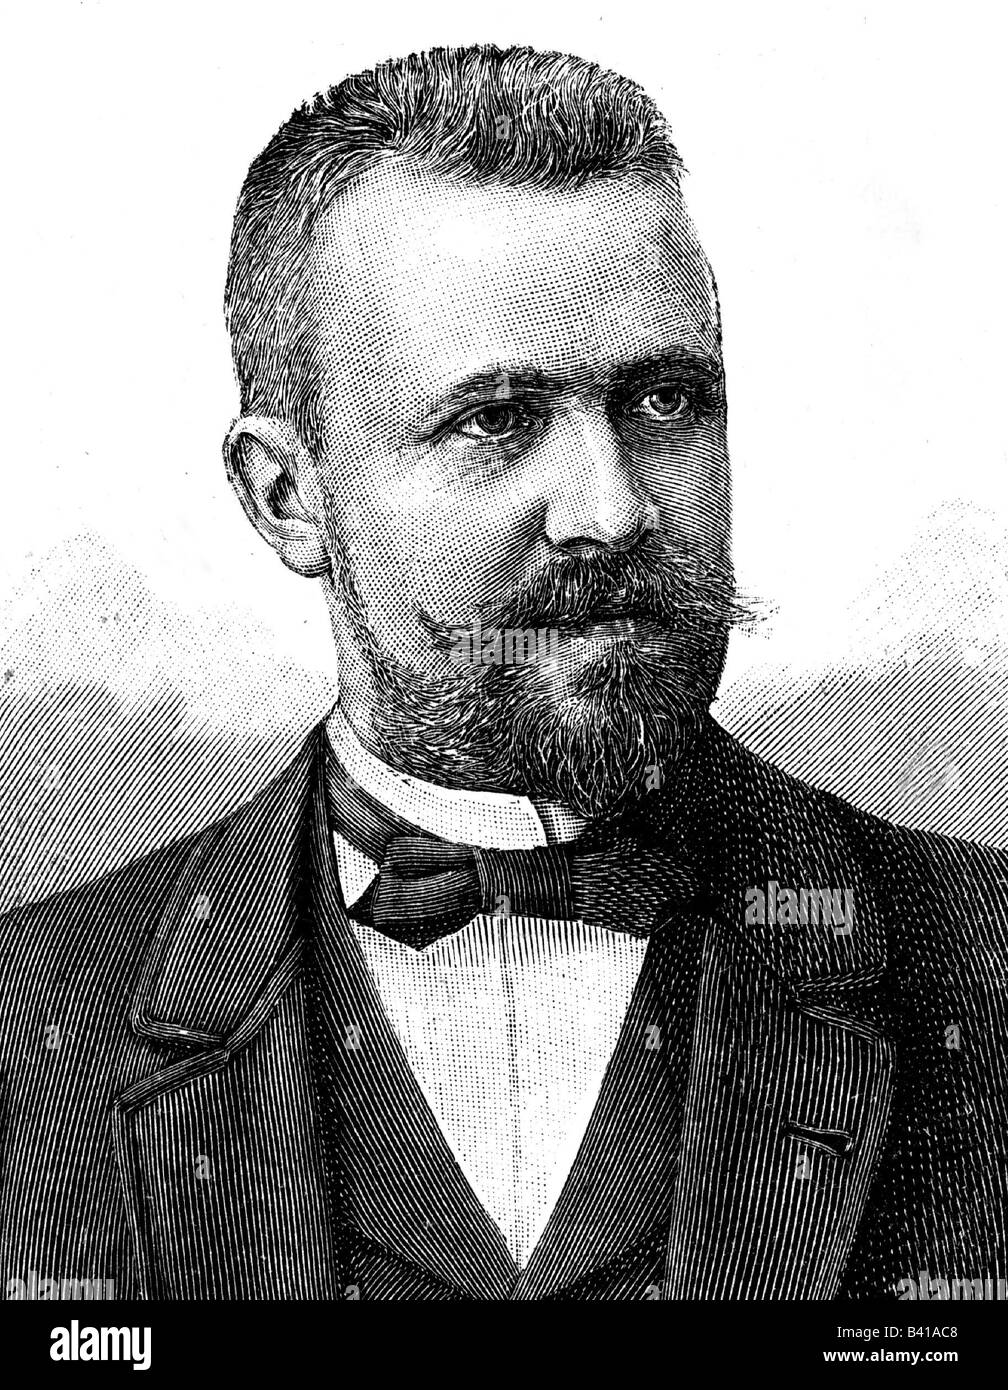 Drygalski, Erich von, 9.2.1865 - 10.1.1949, German geographer, polar scientist, portrait, wood engraving, 19th century, Stock Photo